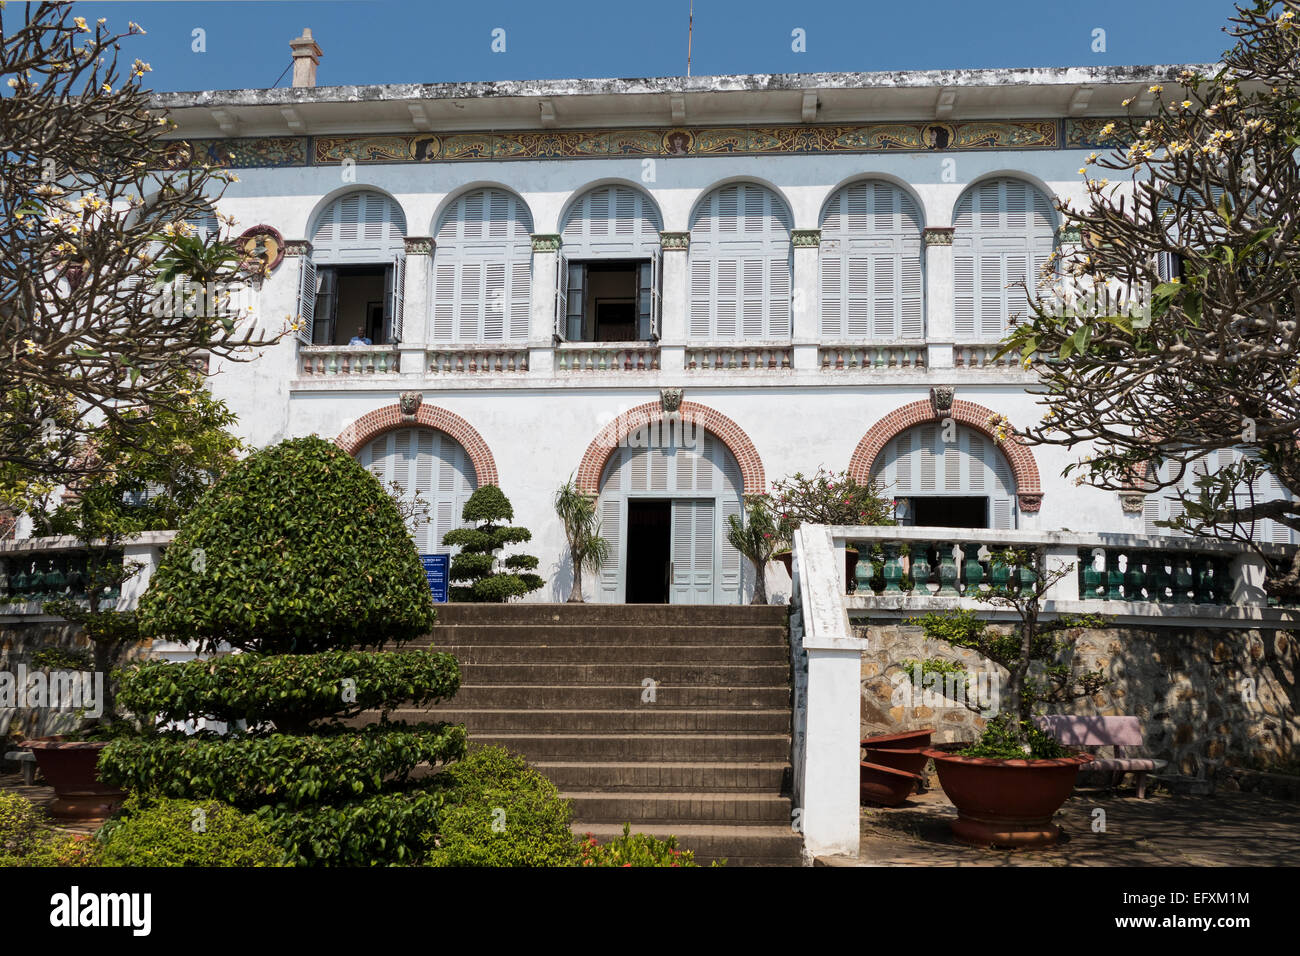 Bạch Dinh ở Vũng Tàu - Tham quan biệt thự mang đậm kiến trúc Pháp